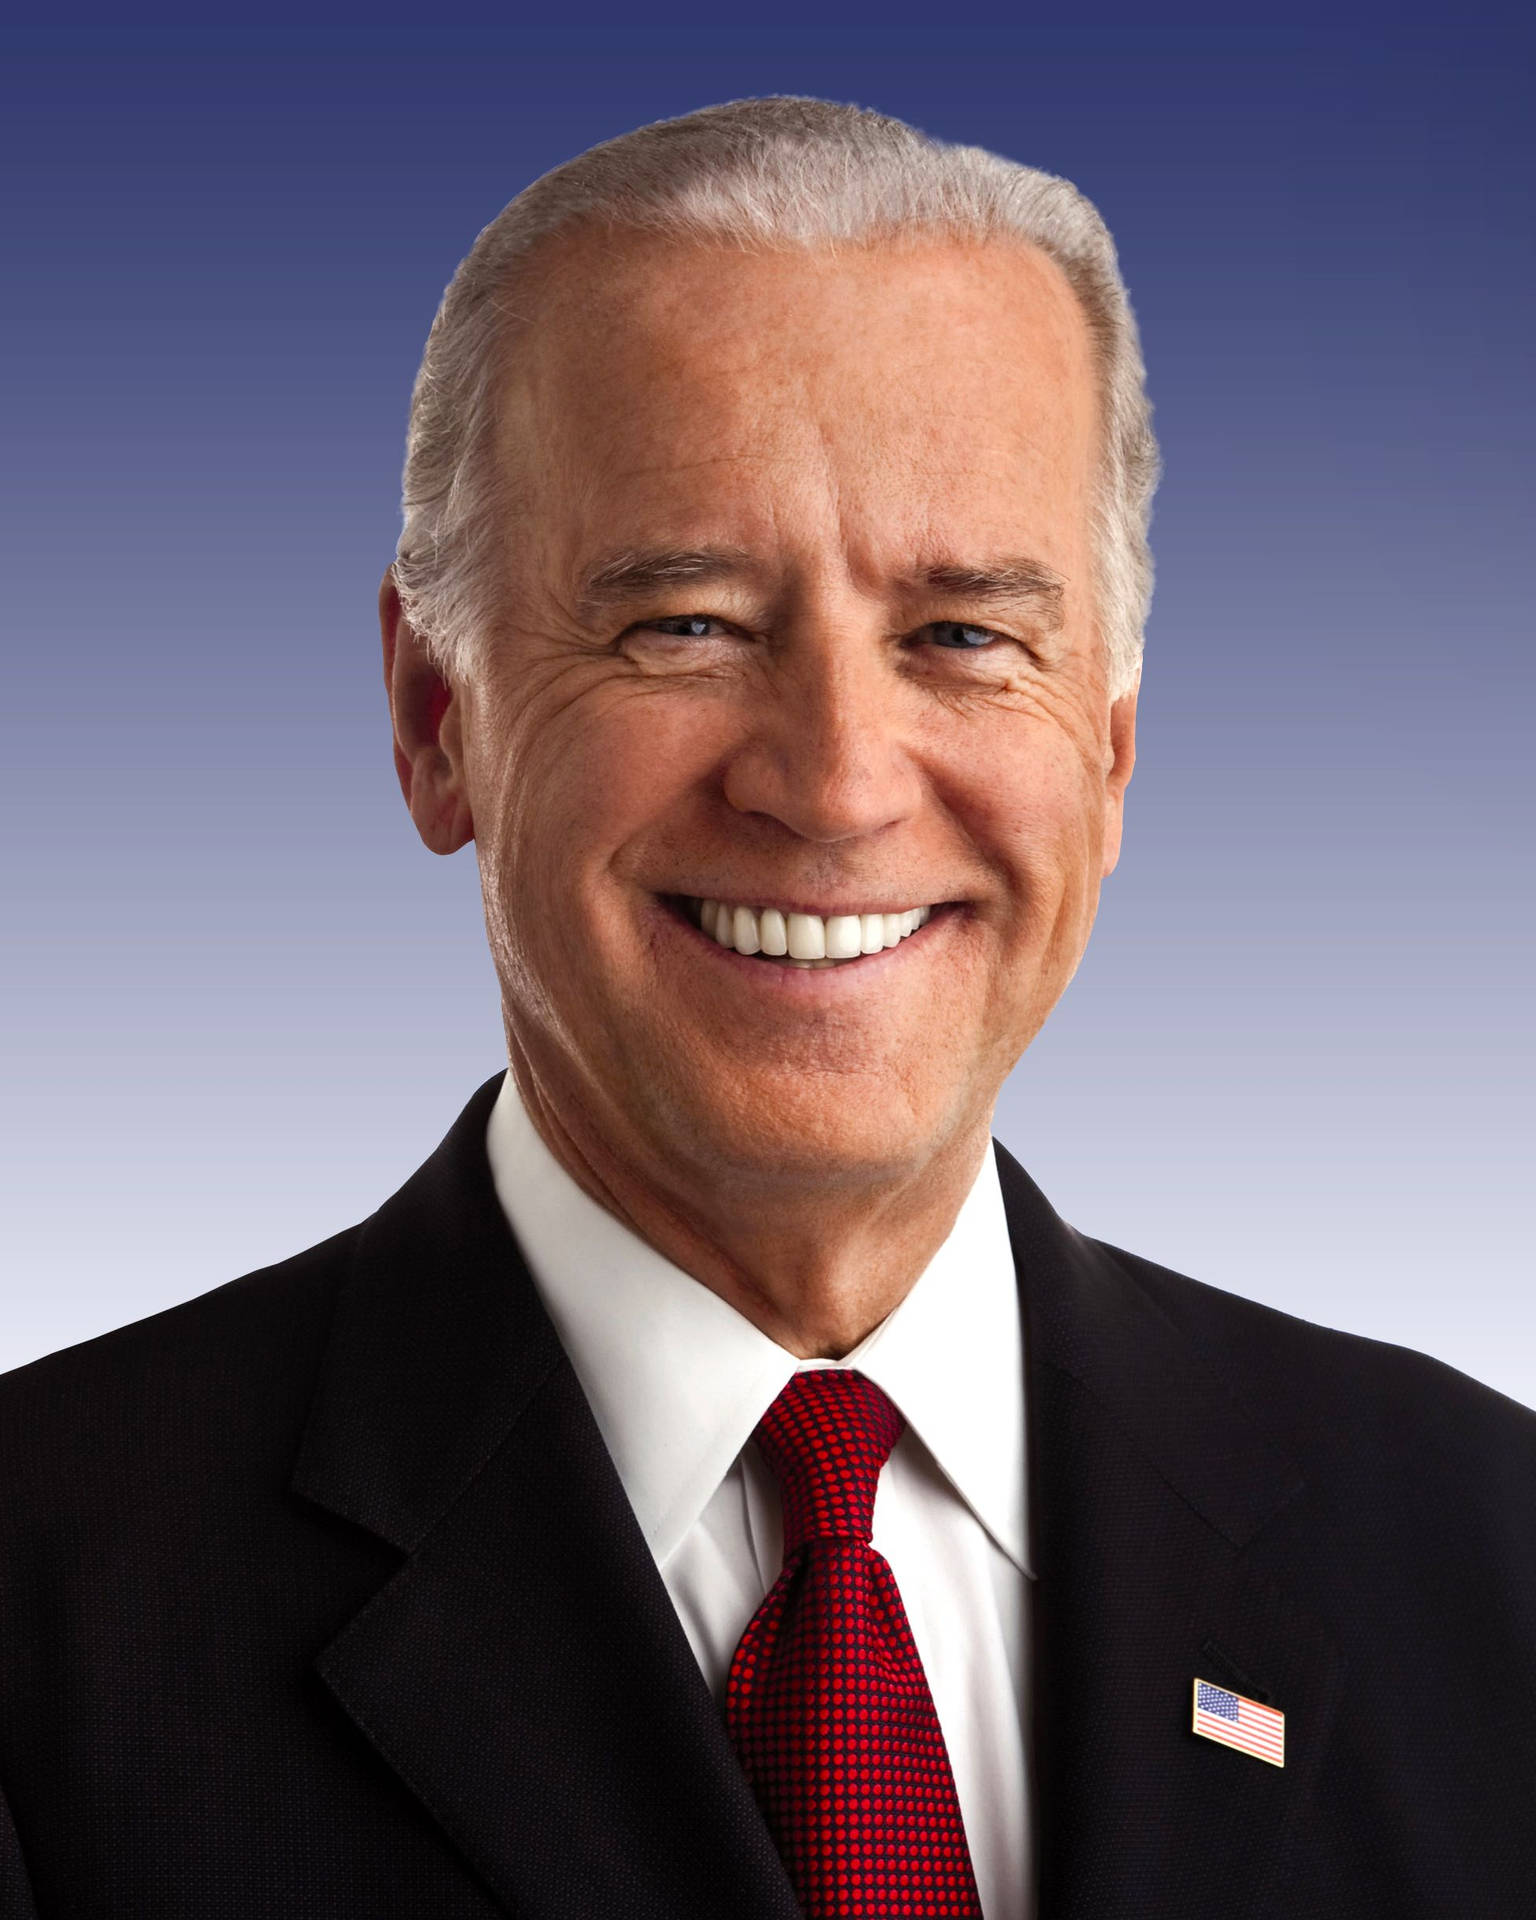 Image Joe Biden Smiling Background